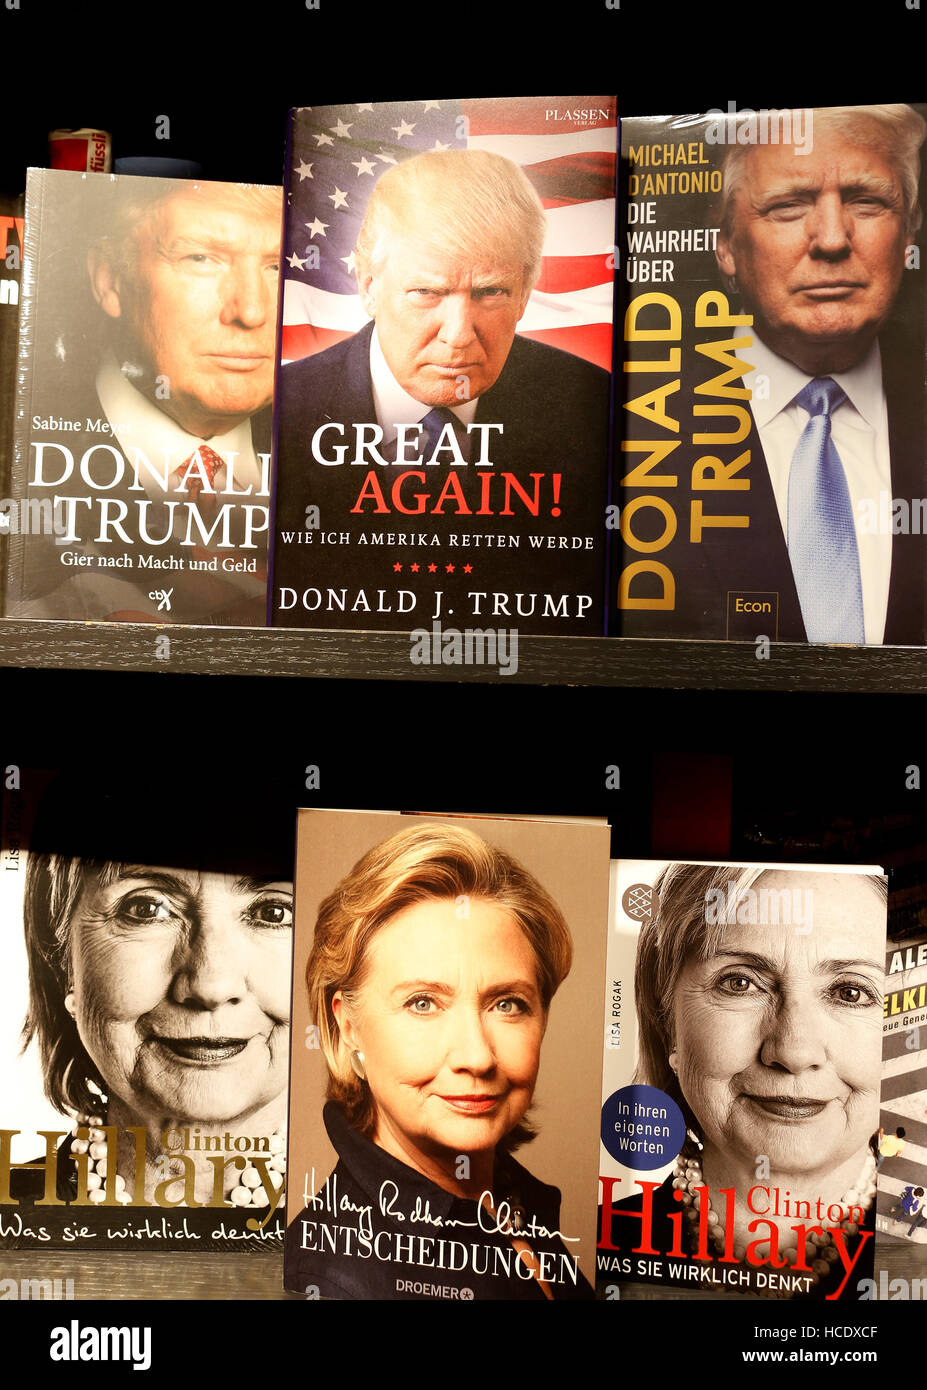 Hillary Clinton, Donald Trump auf Buchcover - Symbolbild zum Praesidentschaftswahlkampf in den USA, Berlin. Stock Photo